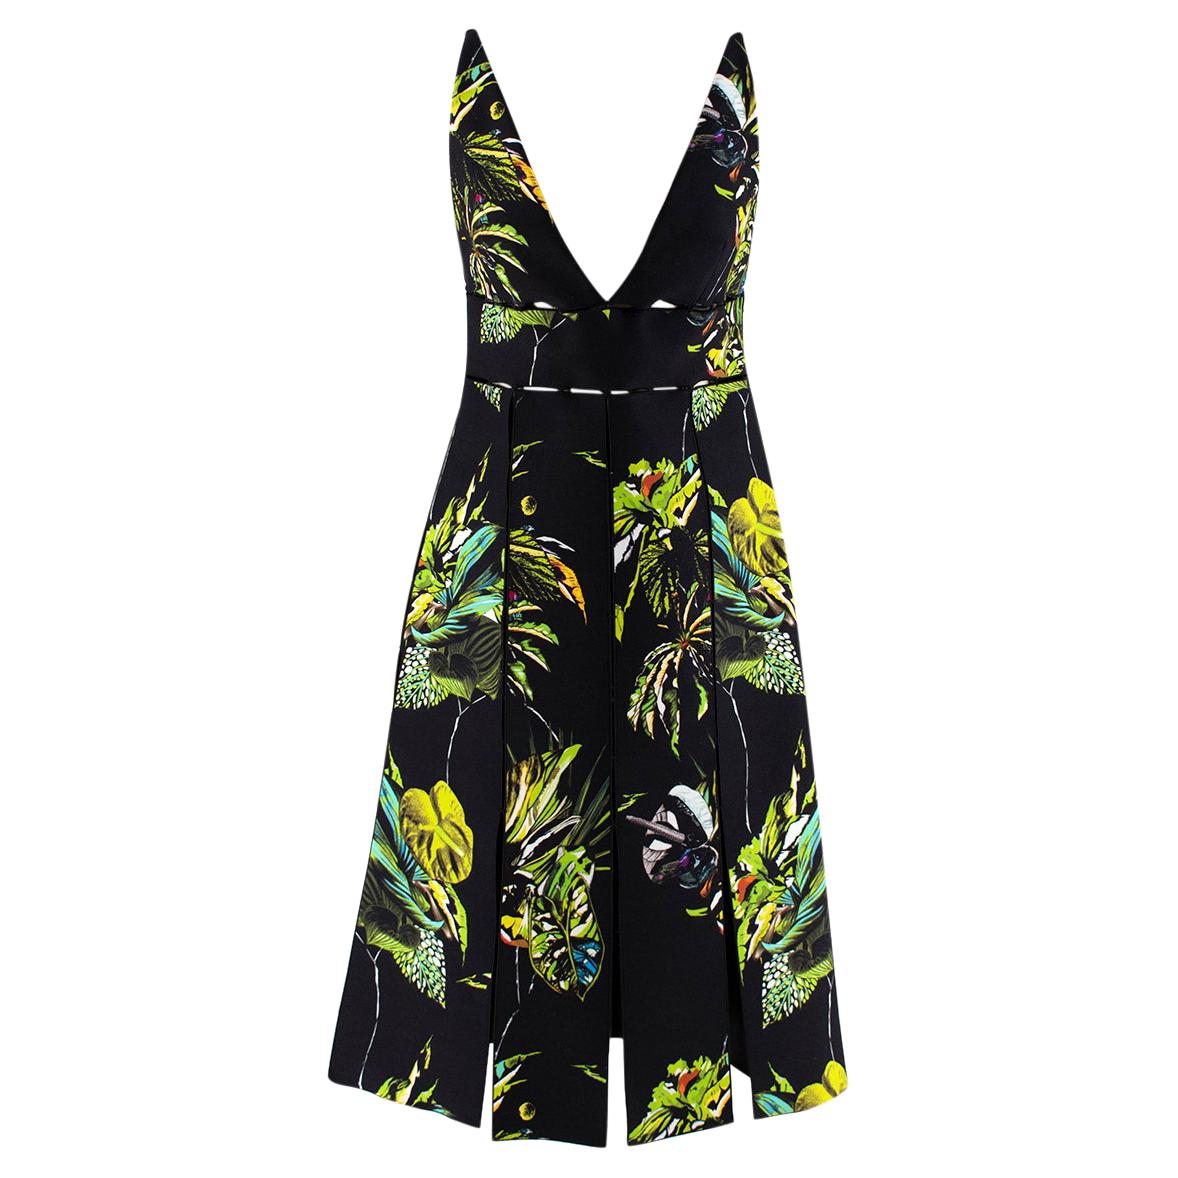 Proenza Schouler Black Tropical Print Cut-Out Dress - US size 4 For Sale